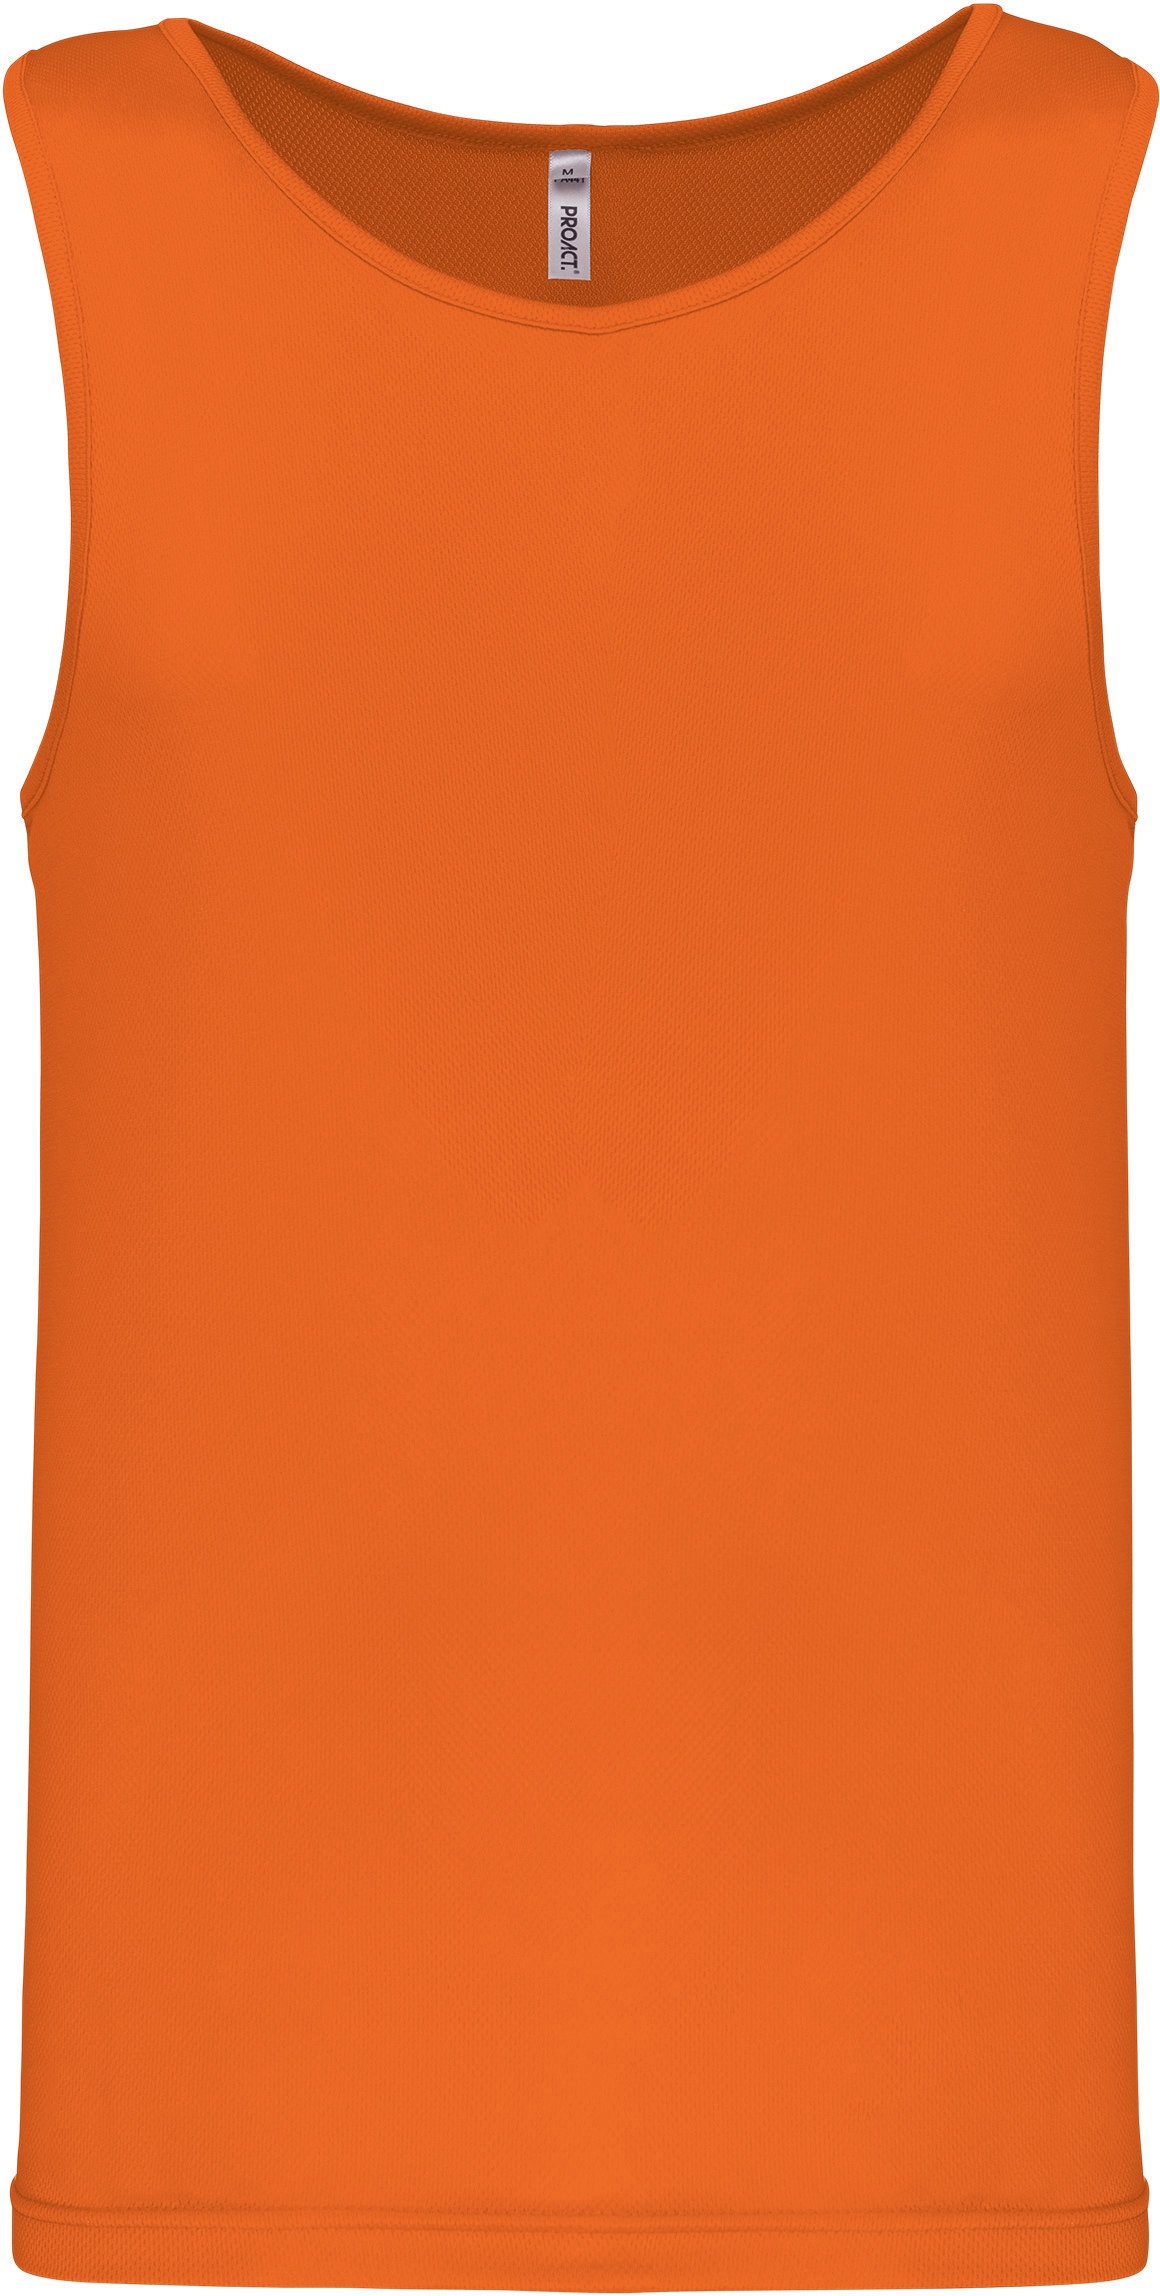 Pánské funkční tílko Barva: neon orange, Velikost: 2XL